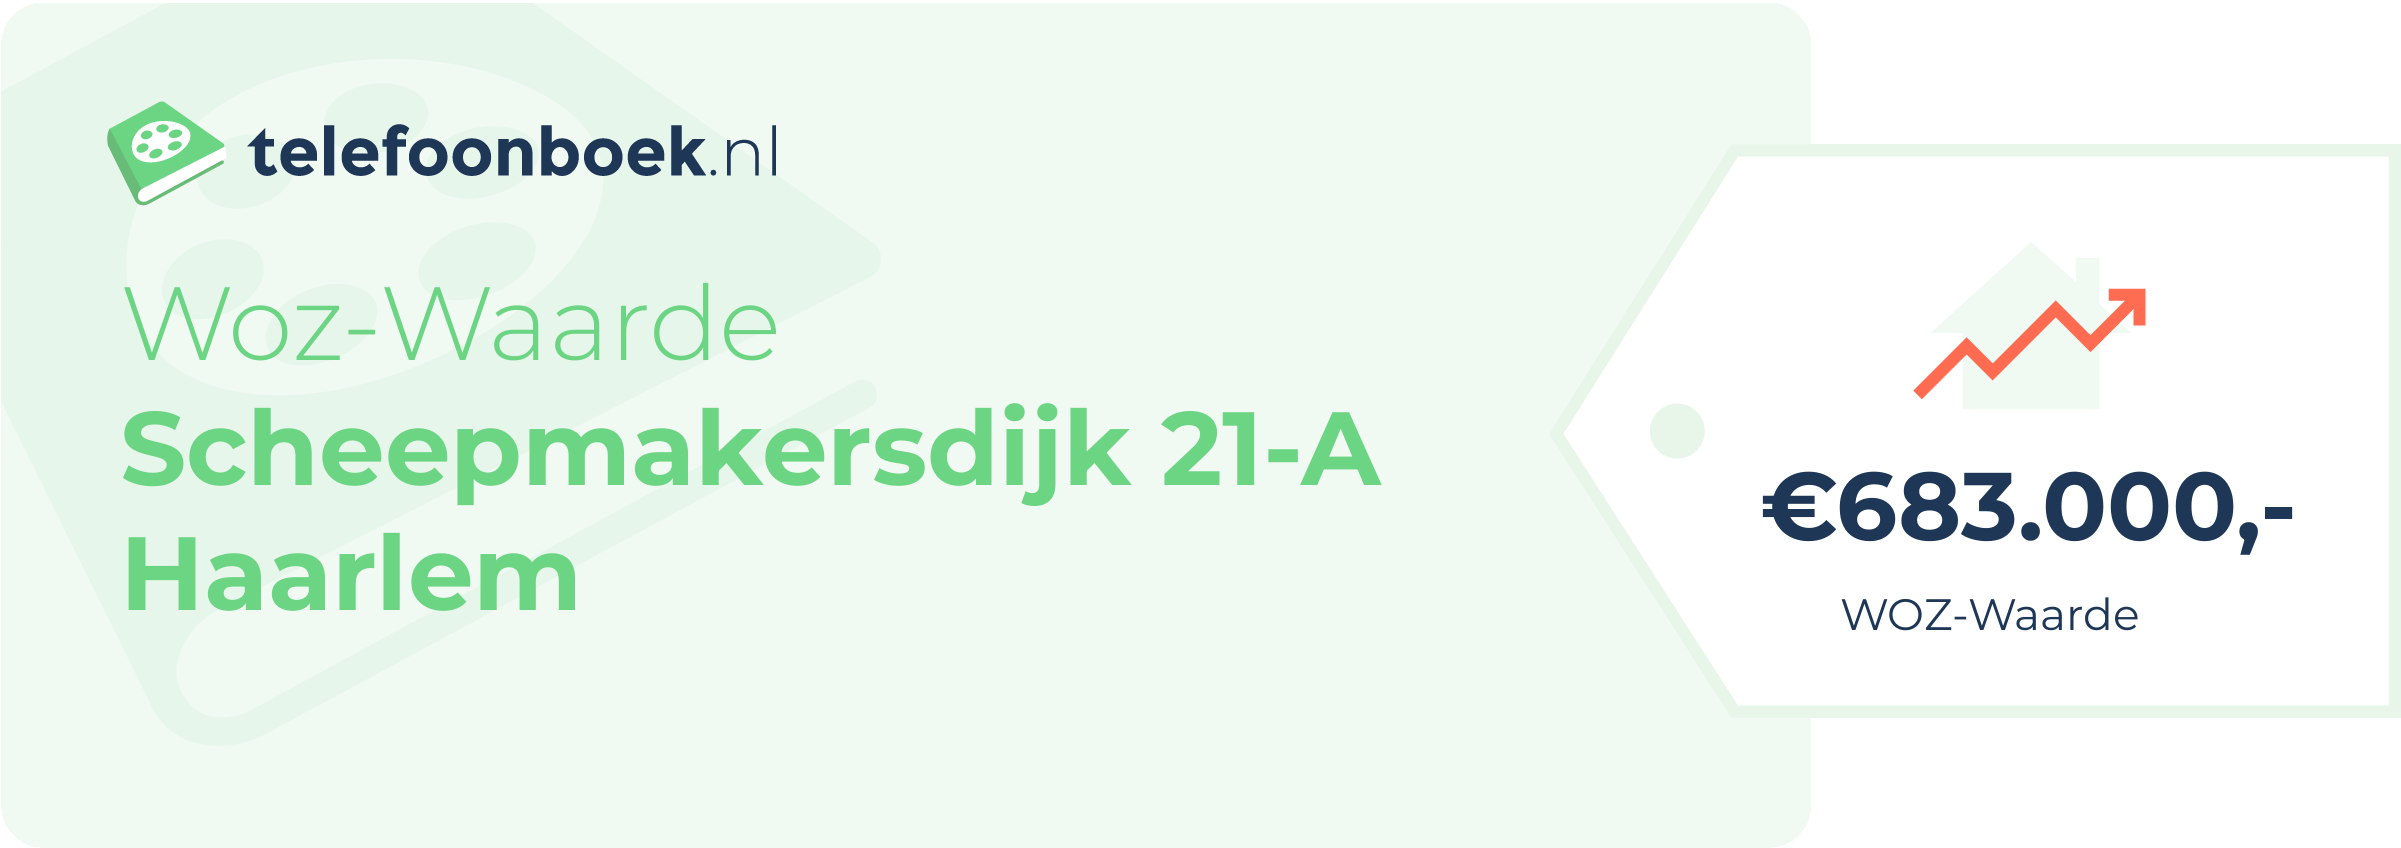 WOZ-waarde Scheepmakersdijk 21-A Haarlem